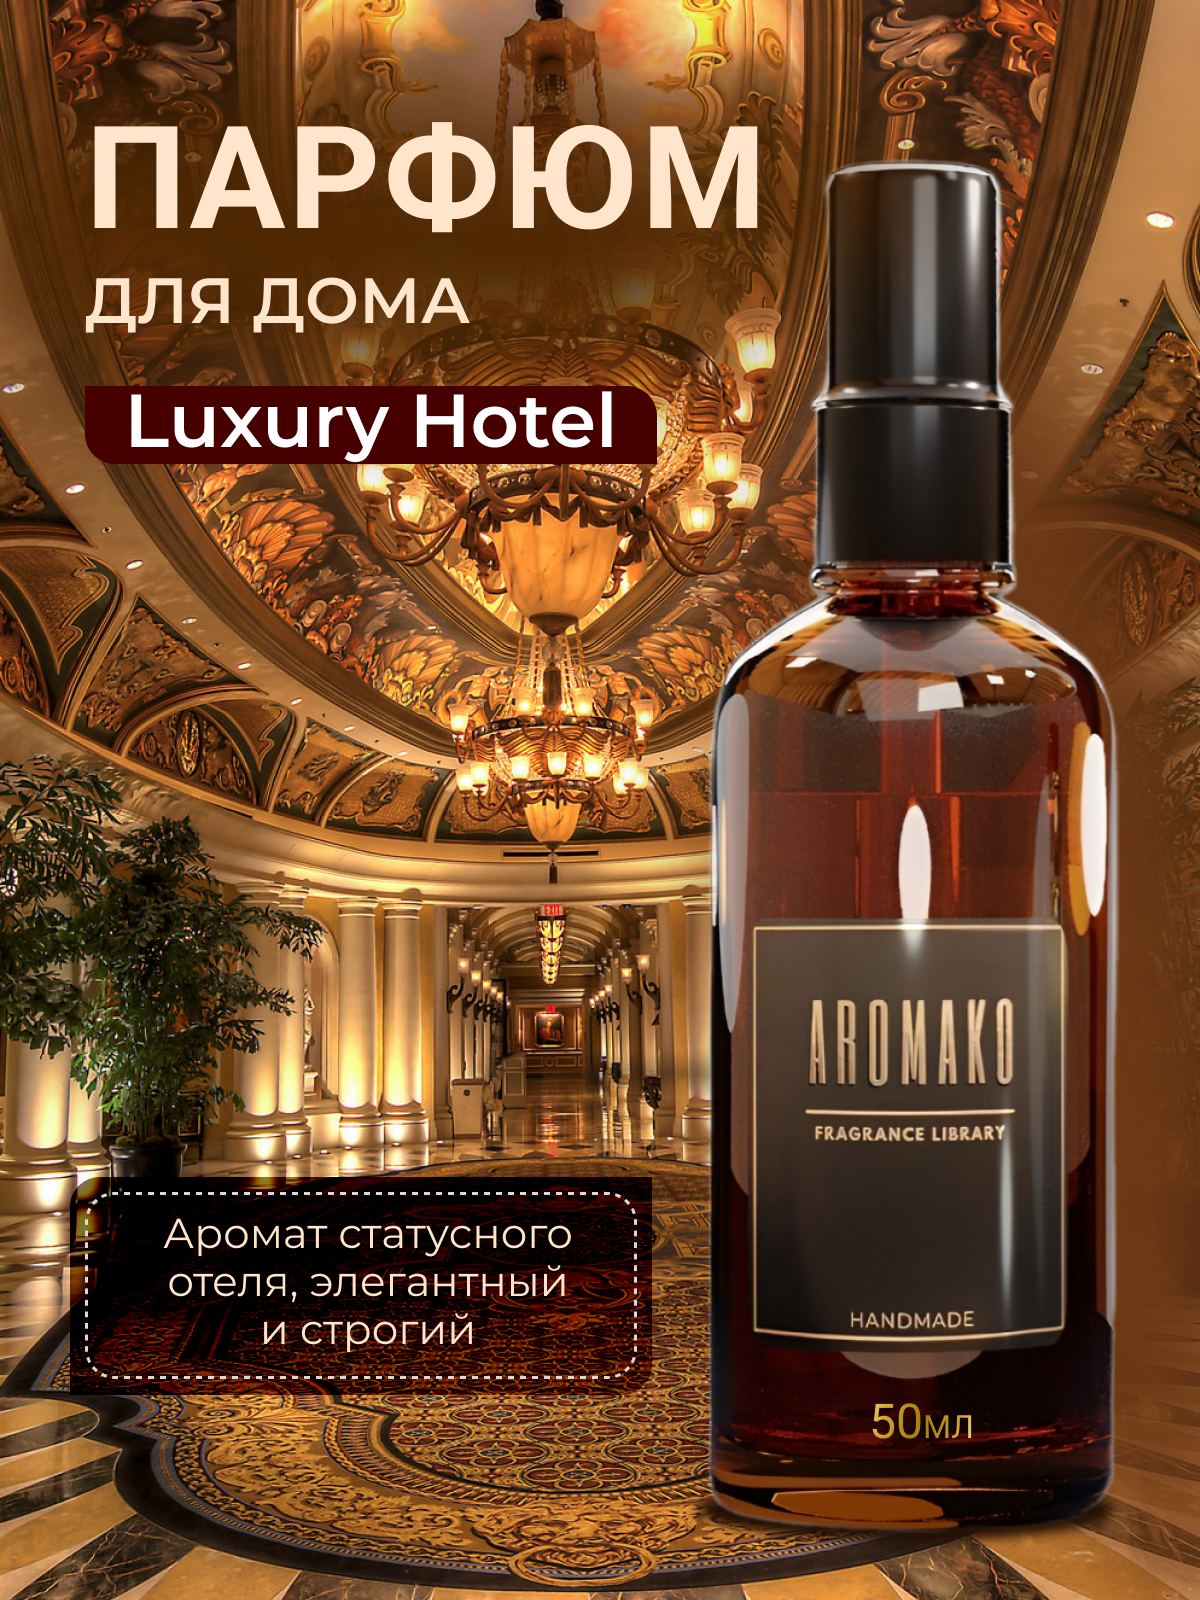 Парфюм-спрей для дома Luxury Hotel 50 мл AROMAKO , текстильный парфюм, освежитель воздуха, ароматизатор для дома